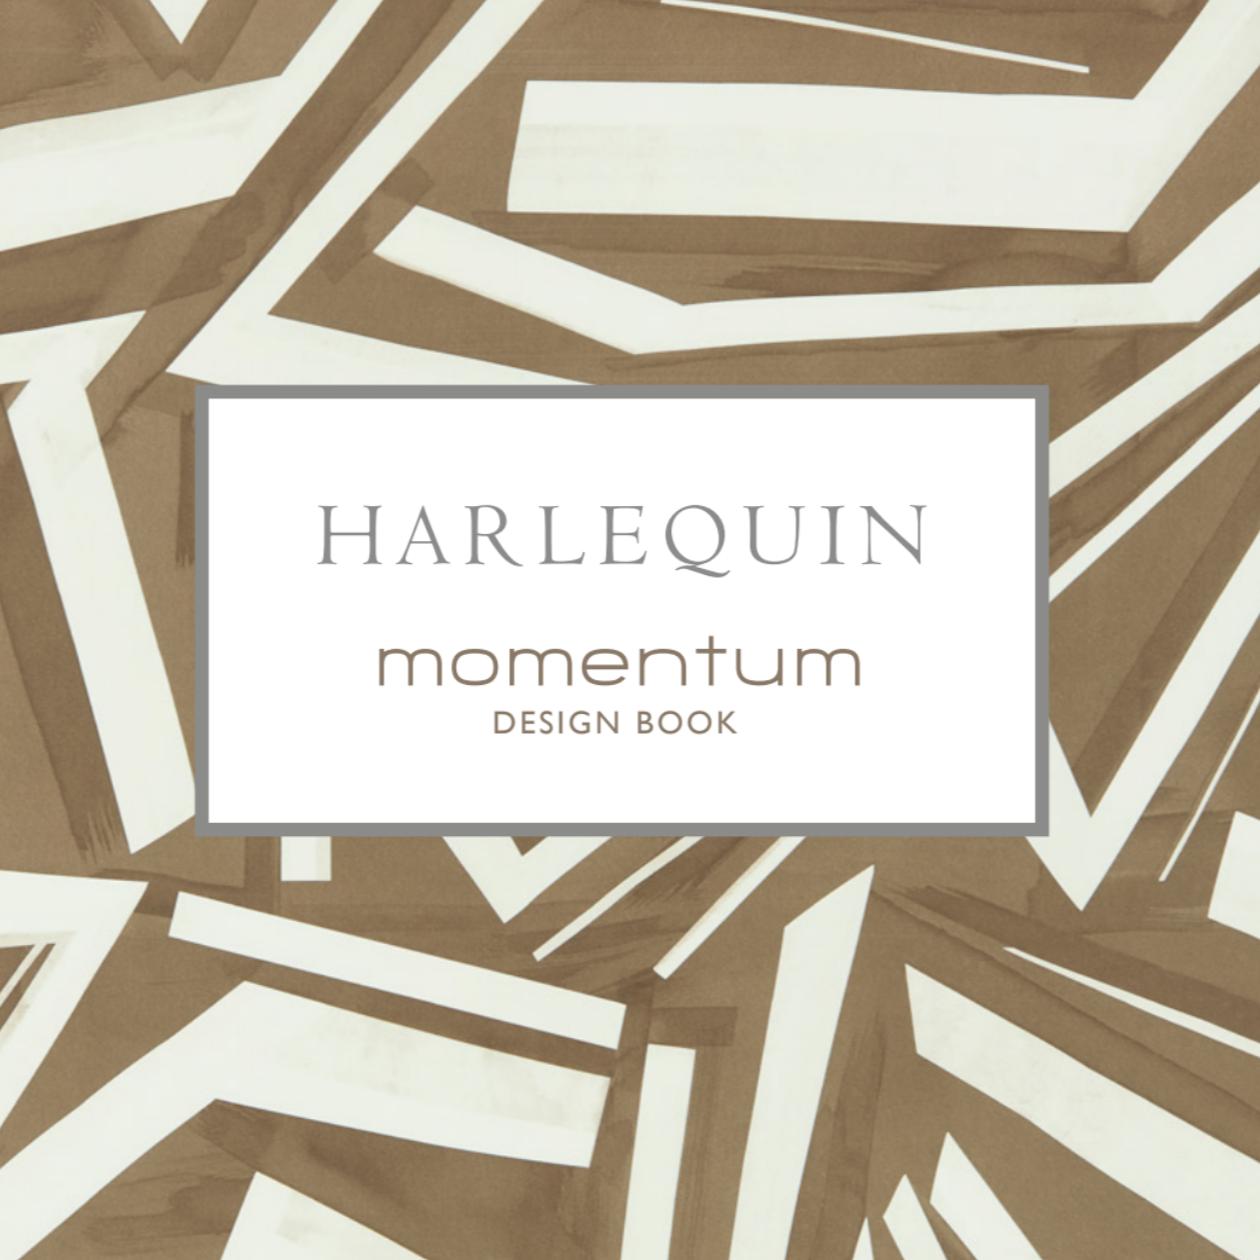 Katlóg bytových textílií a tapiet značky Harlequin